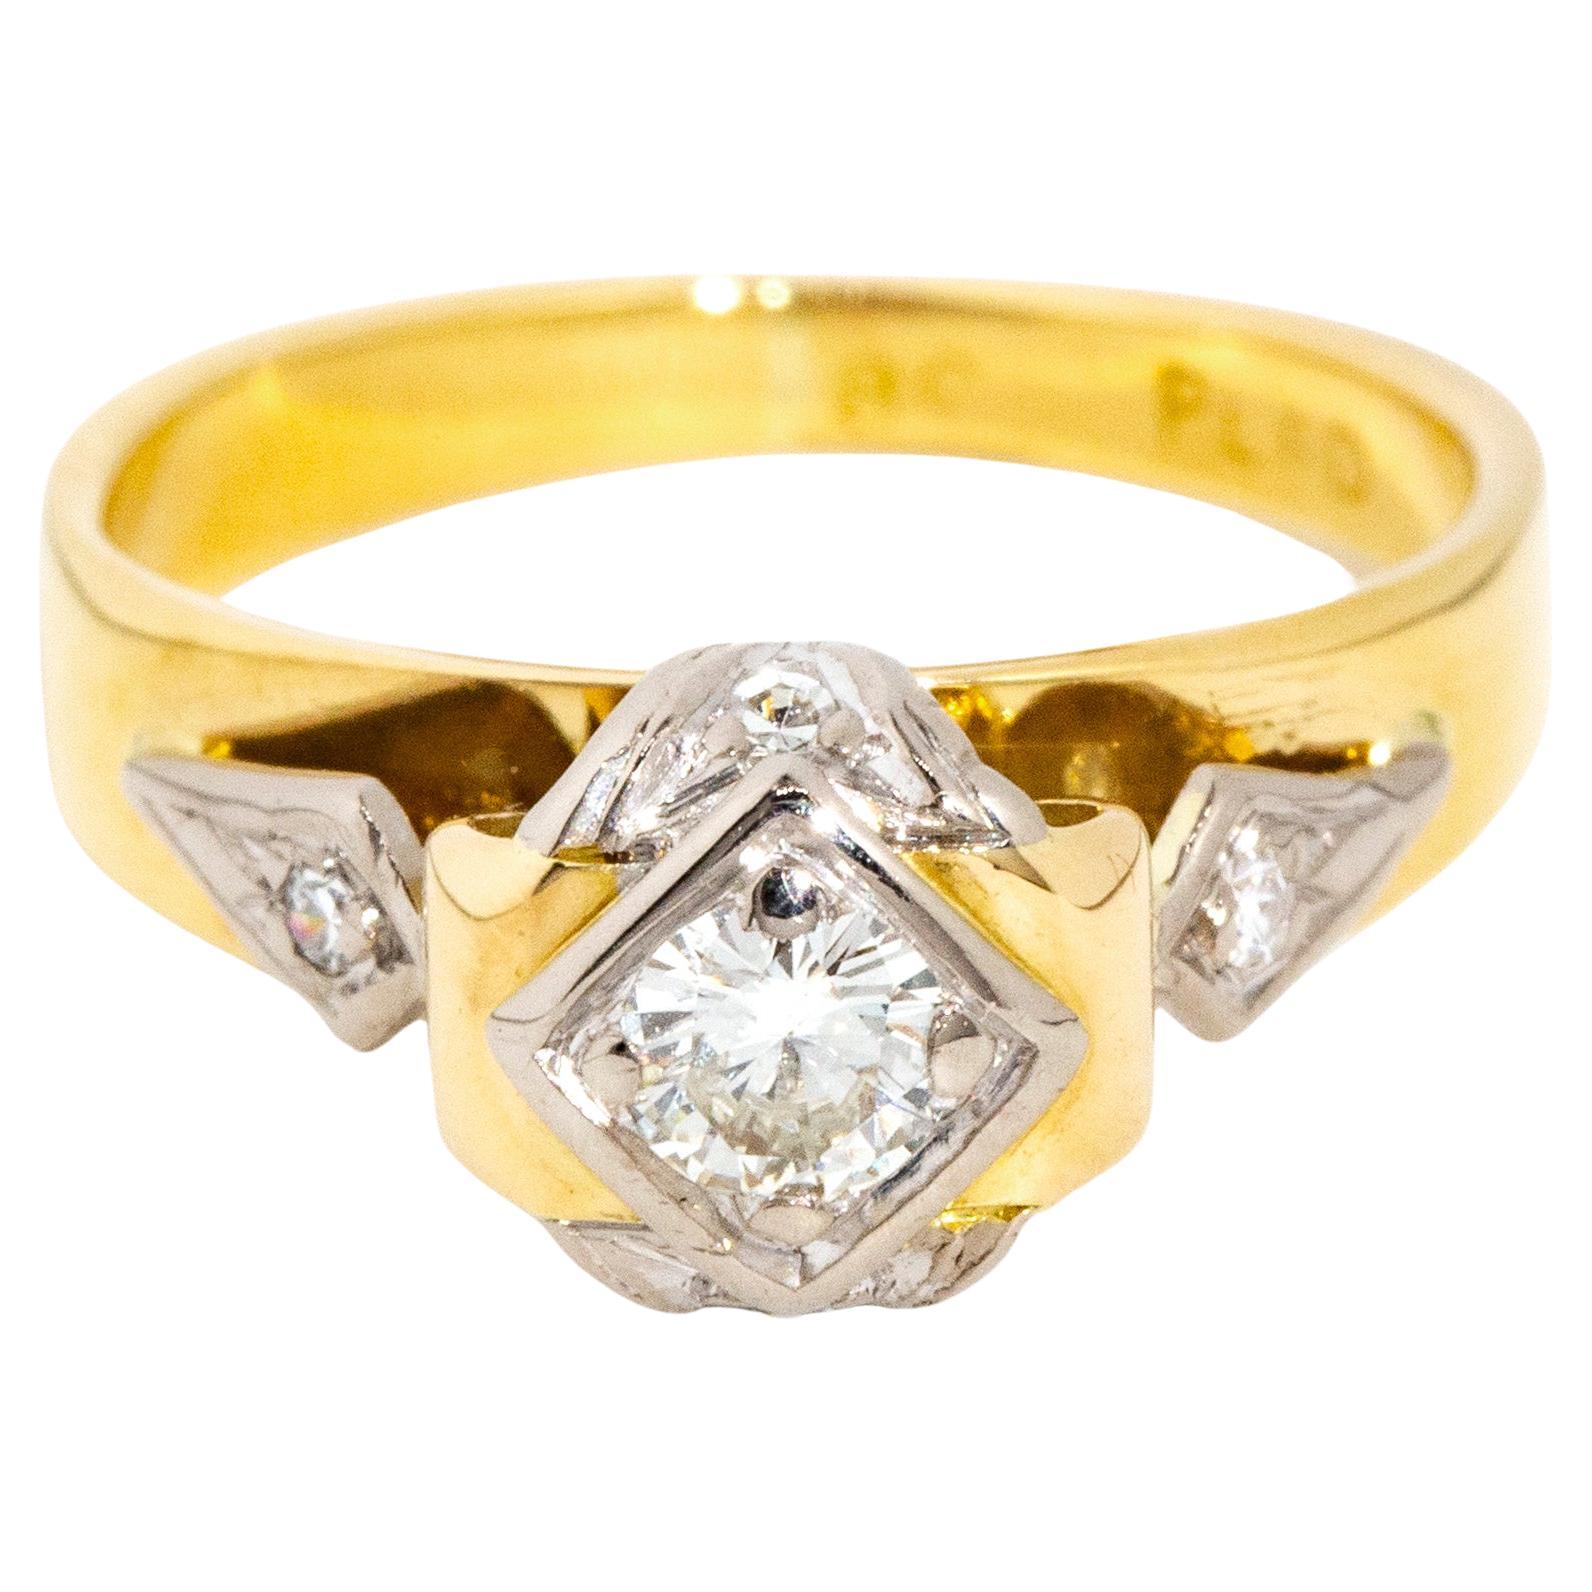 Vintage Circa 1960s Diamond Three Stone Ring 18 Carat Yellow & White Gold